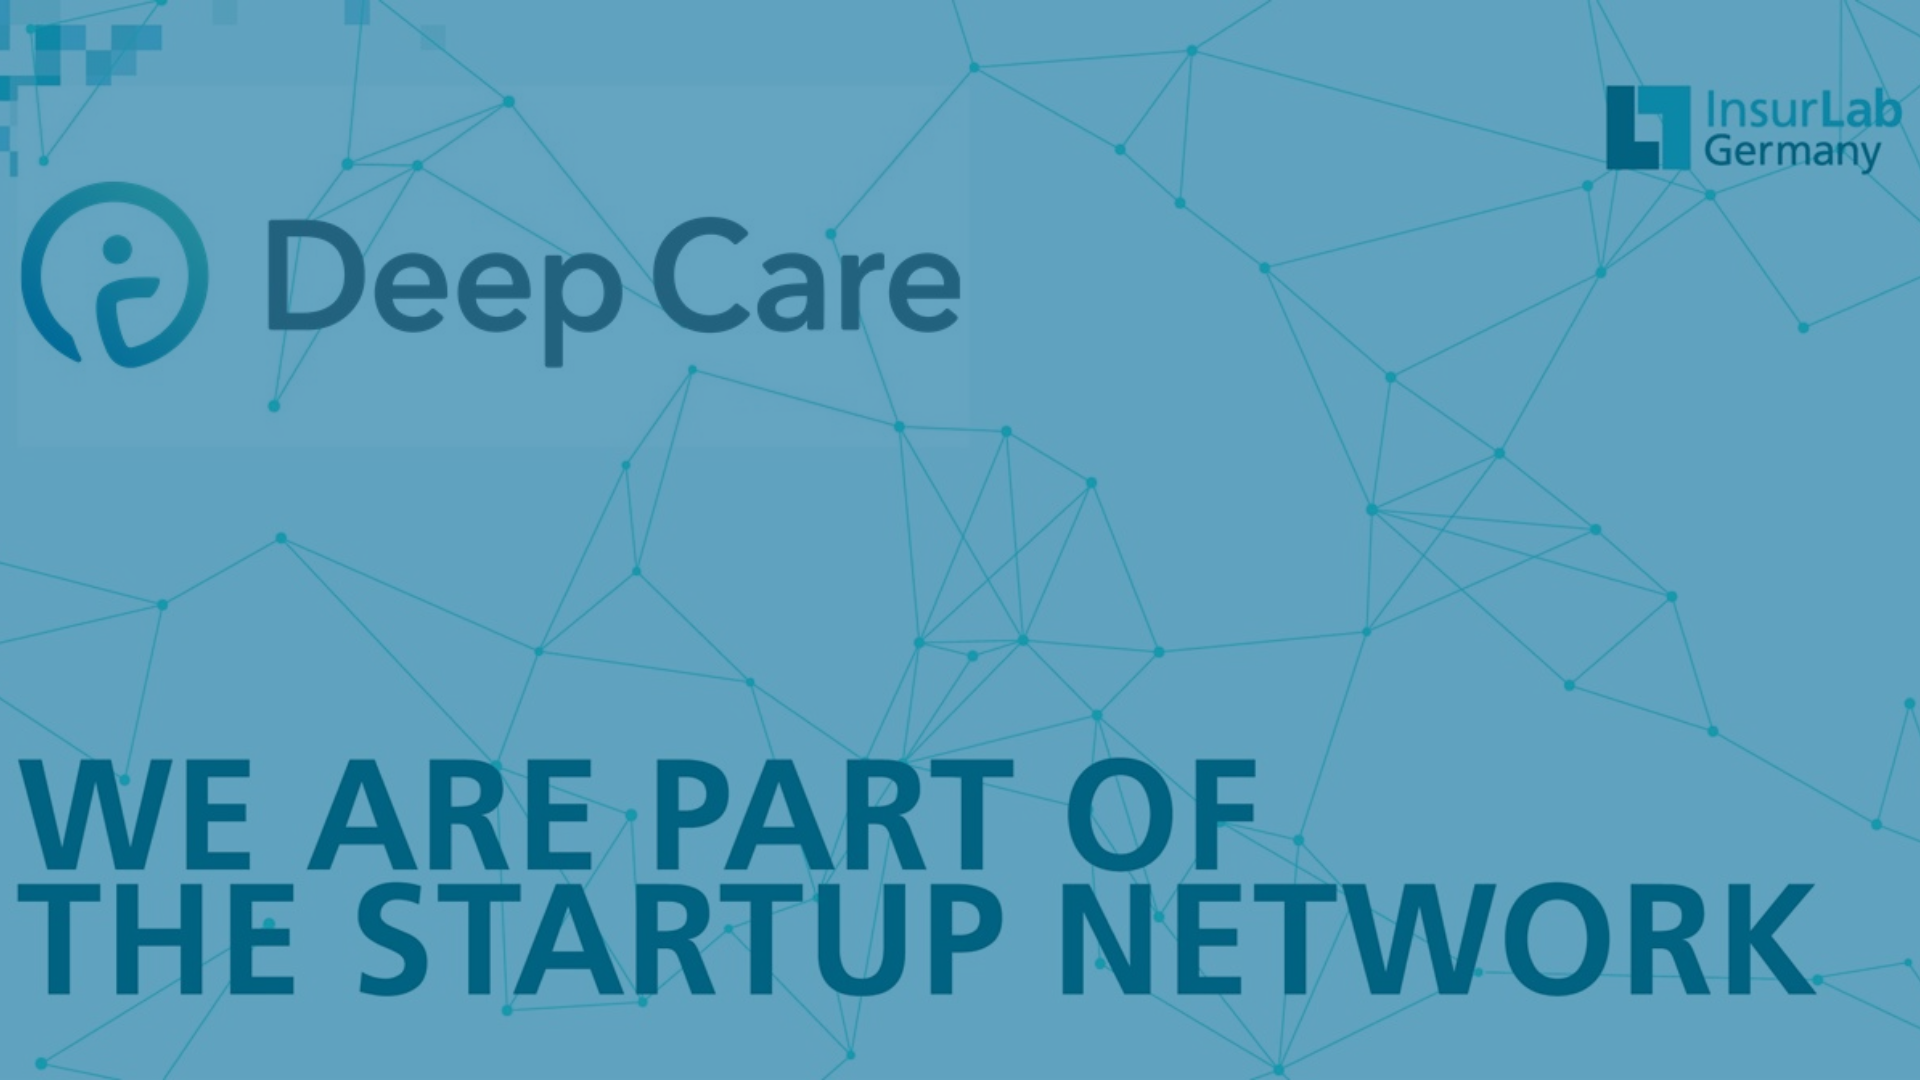 Blauer Hintergrund mit leichtem punktnetz als Muster. Darauf geschrieben steht "We are part of the startup network". Außerdem ist das Deep Care Logo und das InsureLab Logo zu sehen.